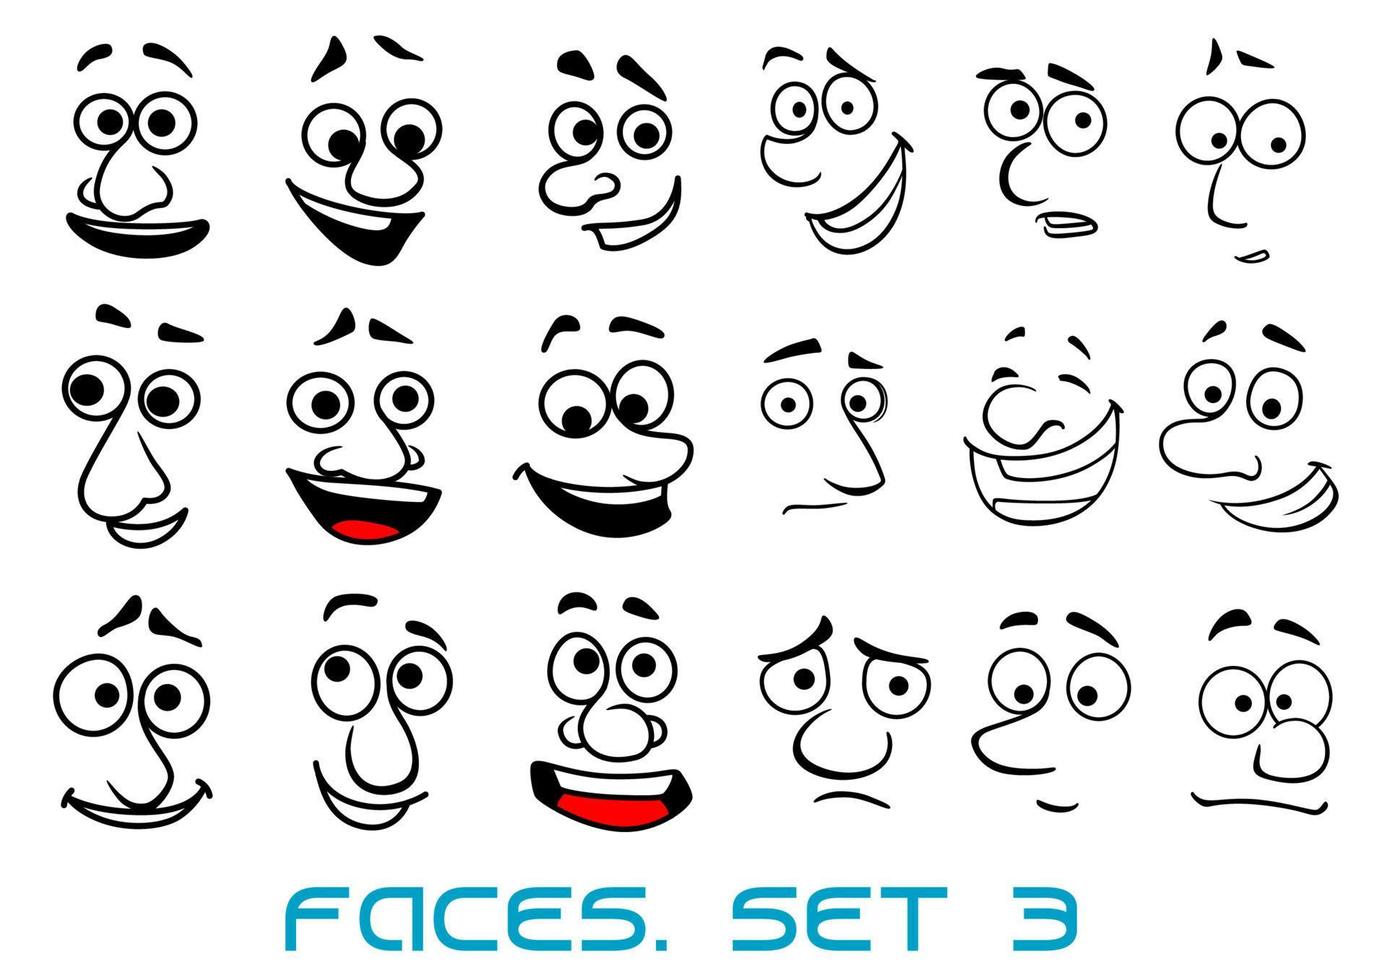 rostos de doodle de desenho animado com emoções diferentes vetor